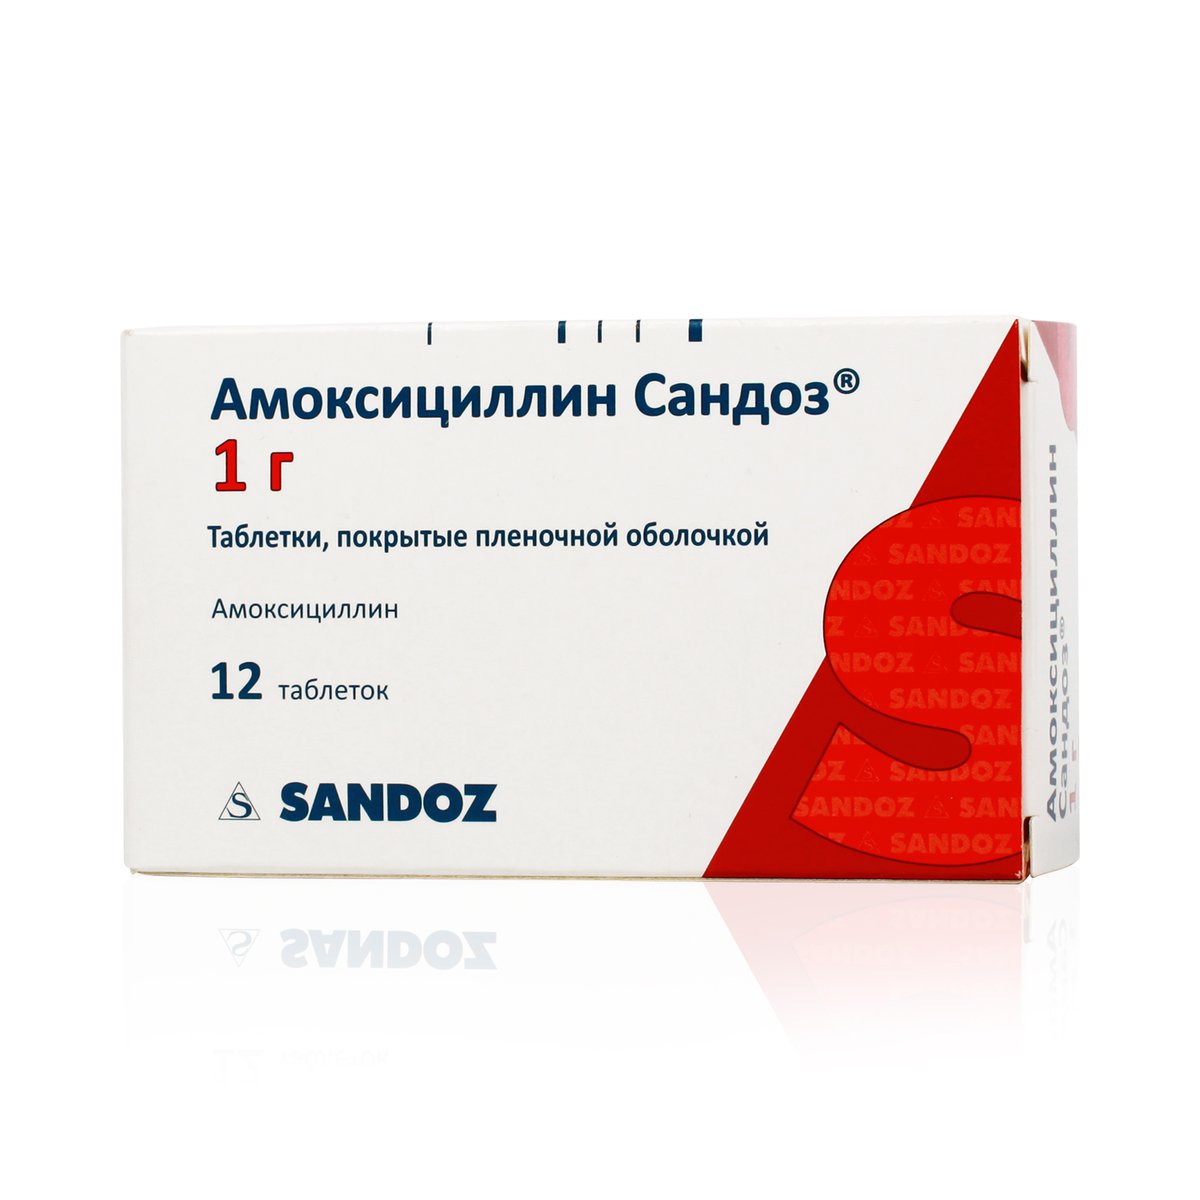 Амоксициллин сандоз (таблетки, 12 шт, 1 гр) - цена,  онлайн в .